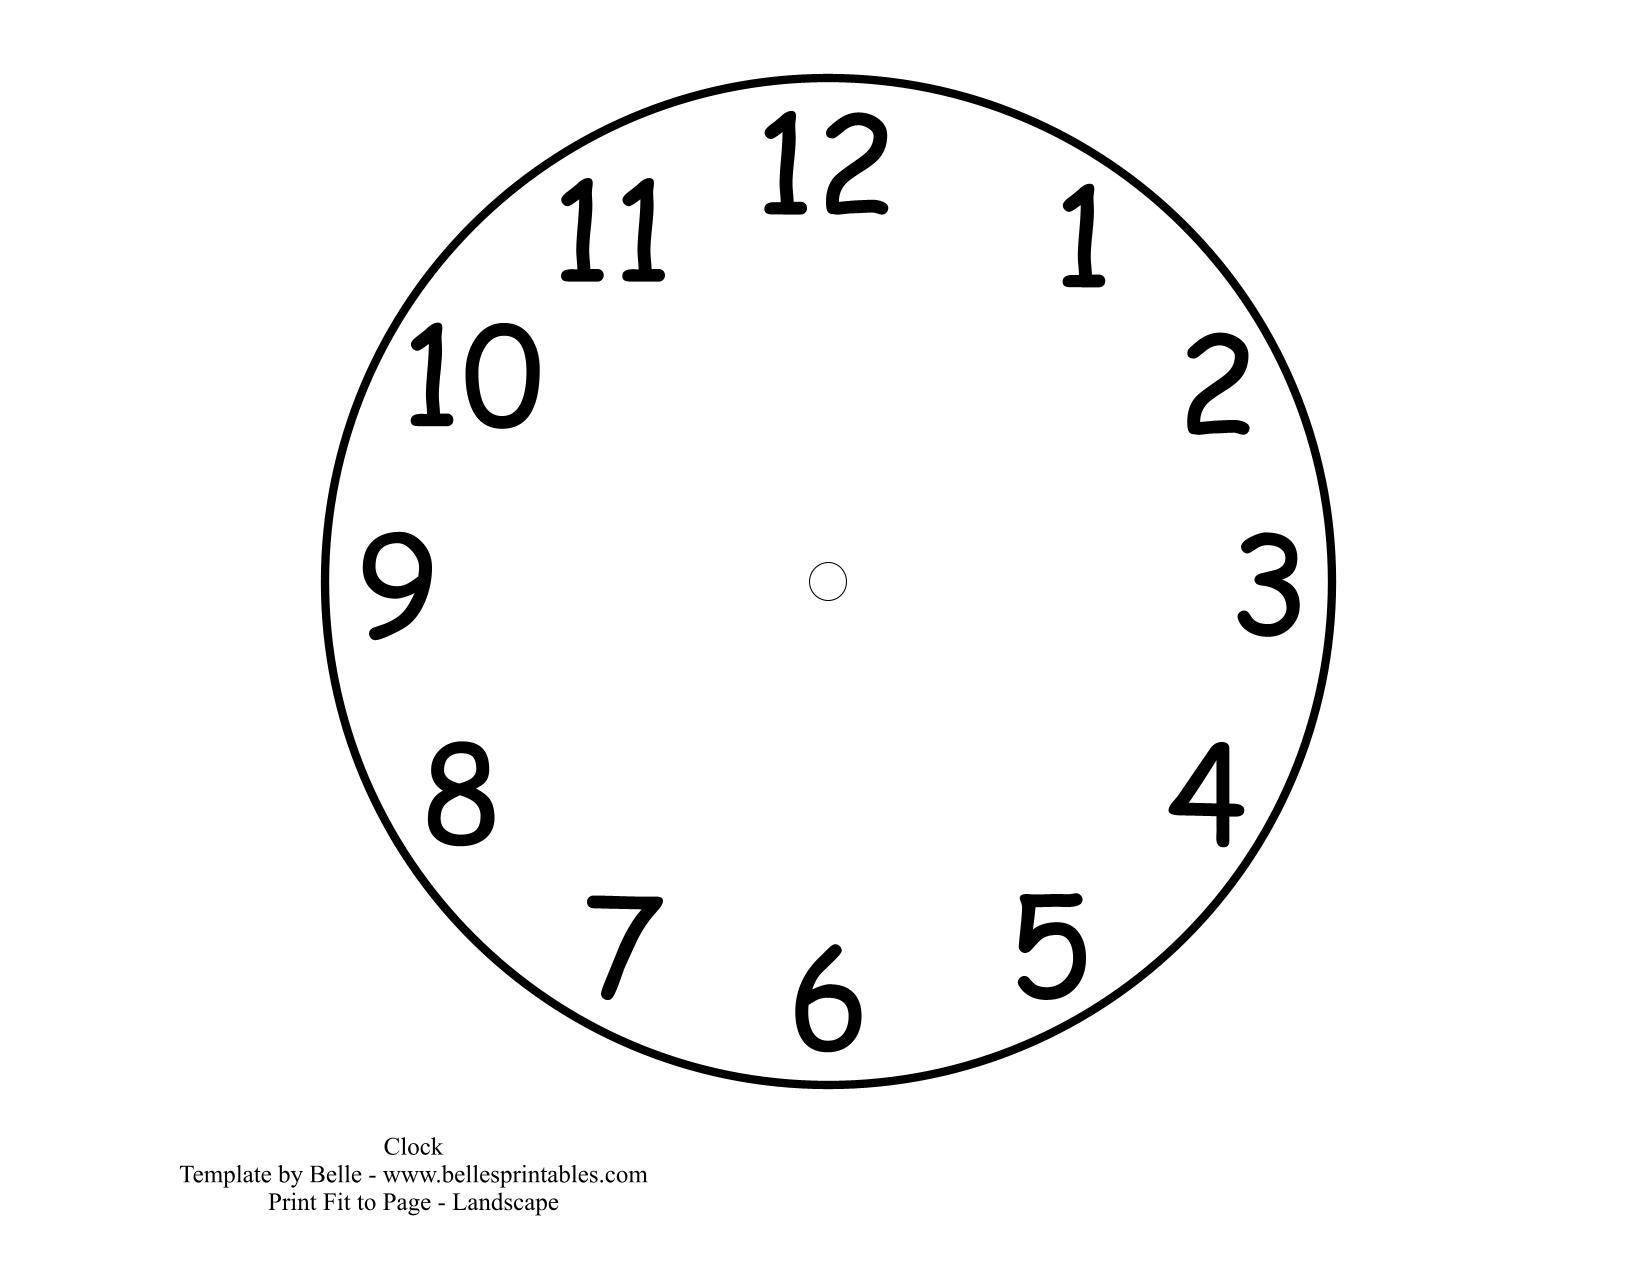 Часы нарисованный циферблат. Циферблат часов. Макет часов для печати. Шаблон часов для детей. Макет часов для детей.